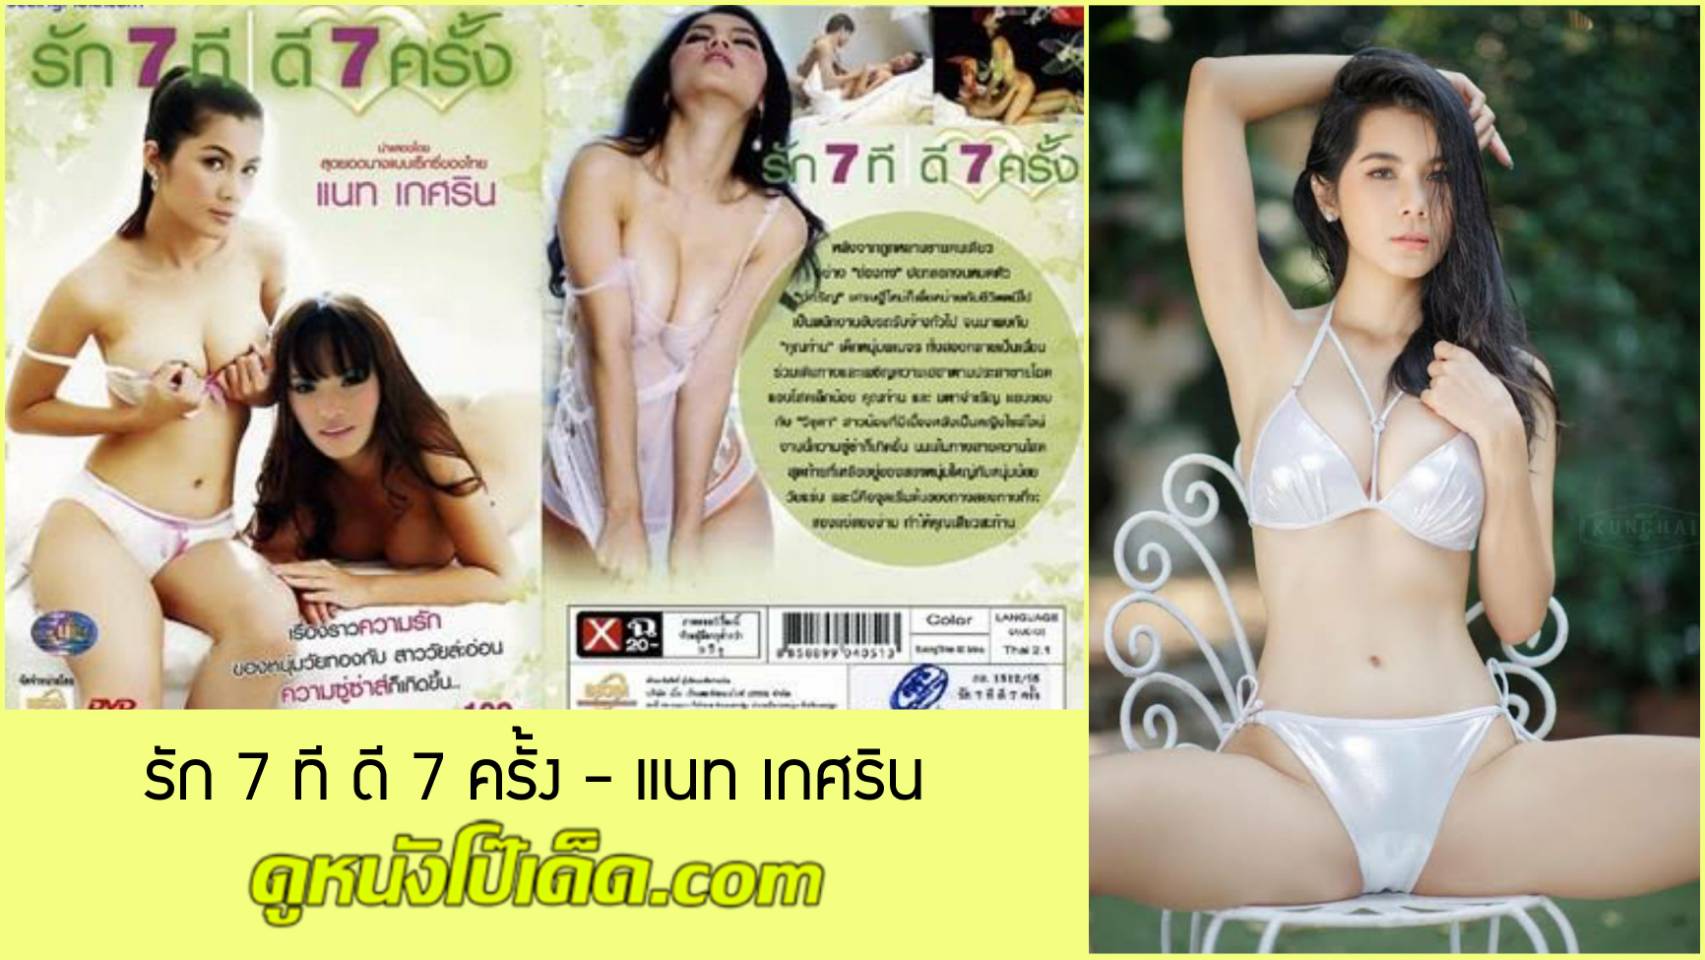 หนังอาร์ไทย รัก 7 ที ดี 7 ครั้ง 2012 น้องแนท เกศริน Nat – Kesarin Chaichalermpol สาวไซด์ไลน์ยุคเก่า Porn Thai ขายหีให้หนุ่มพเนจรเย็ดจนสนุกสนาน ผลัดกันเยสสดห้ามแอบดูคือกฎของกลุ่มนี้